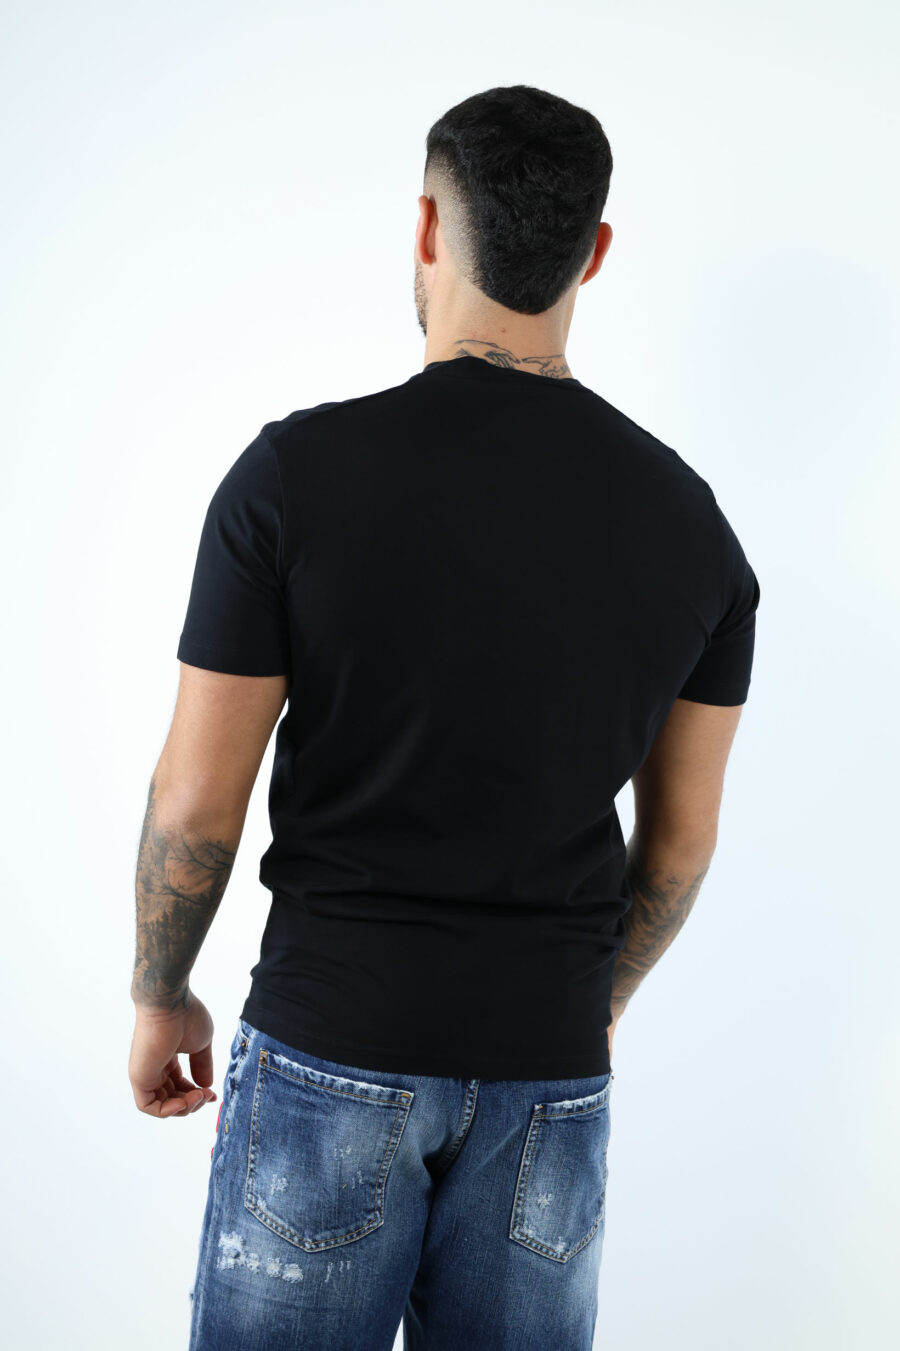 Camiseta negra con maxilogo "collegue league" - 106874